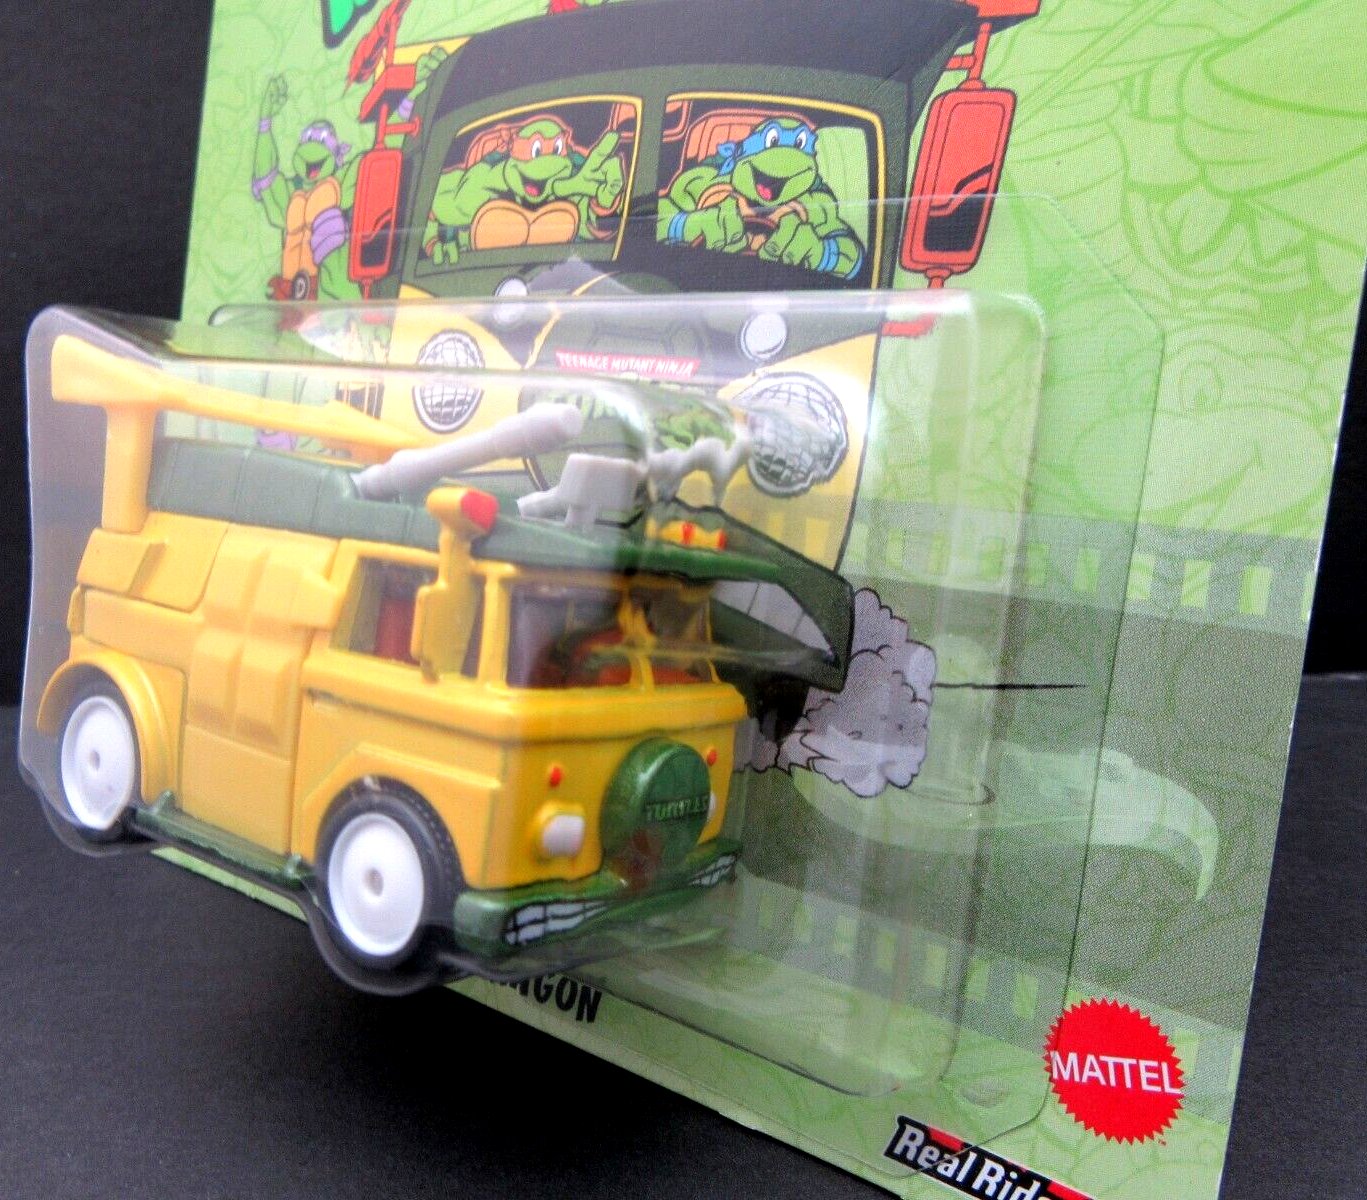 Teenage Mutant Ninja Turtles Party Bus ~ Hot Wheels Premium ~ Die Cast